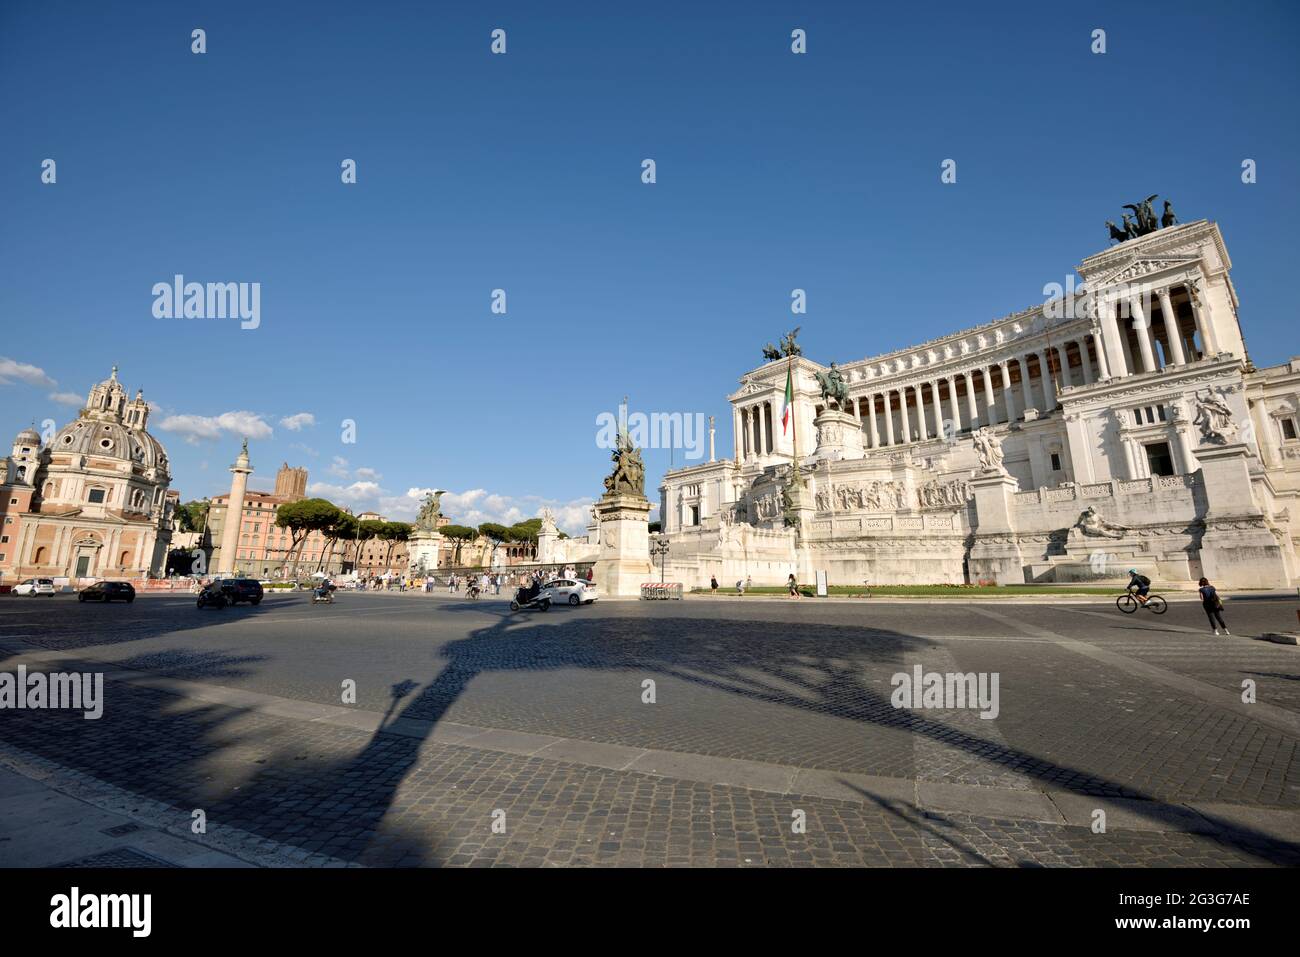 Italie, Rome, piazza venezia, vittoriano Banque D'Images